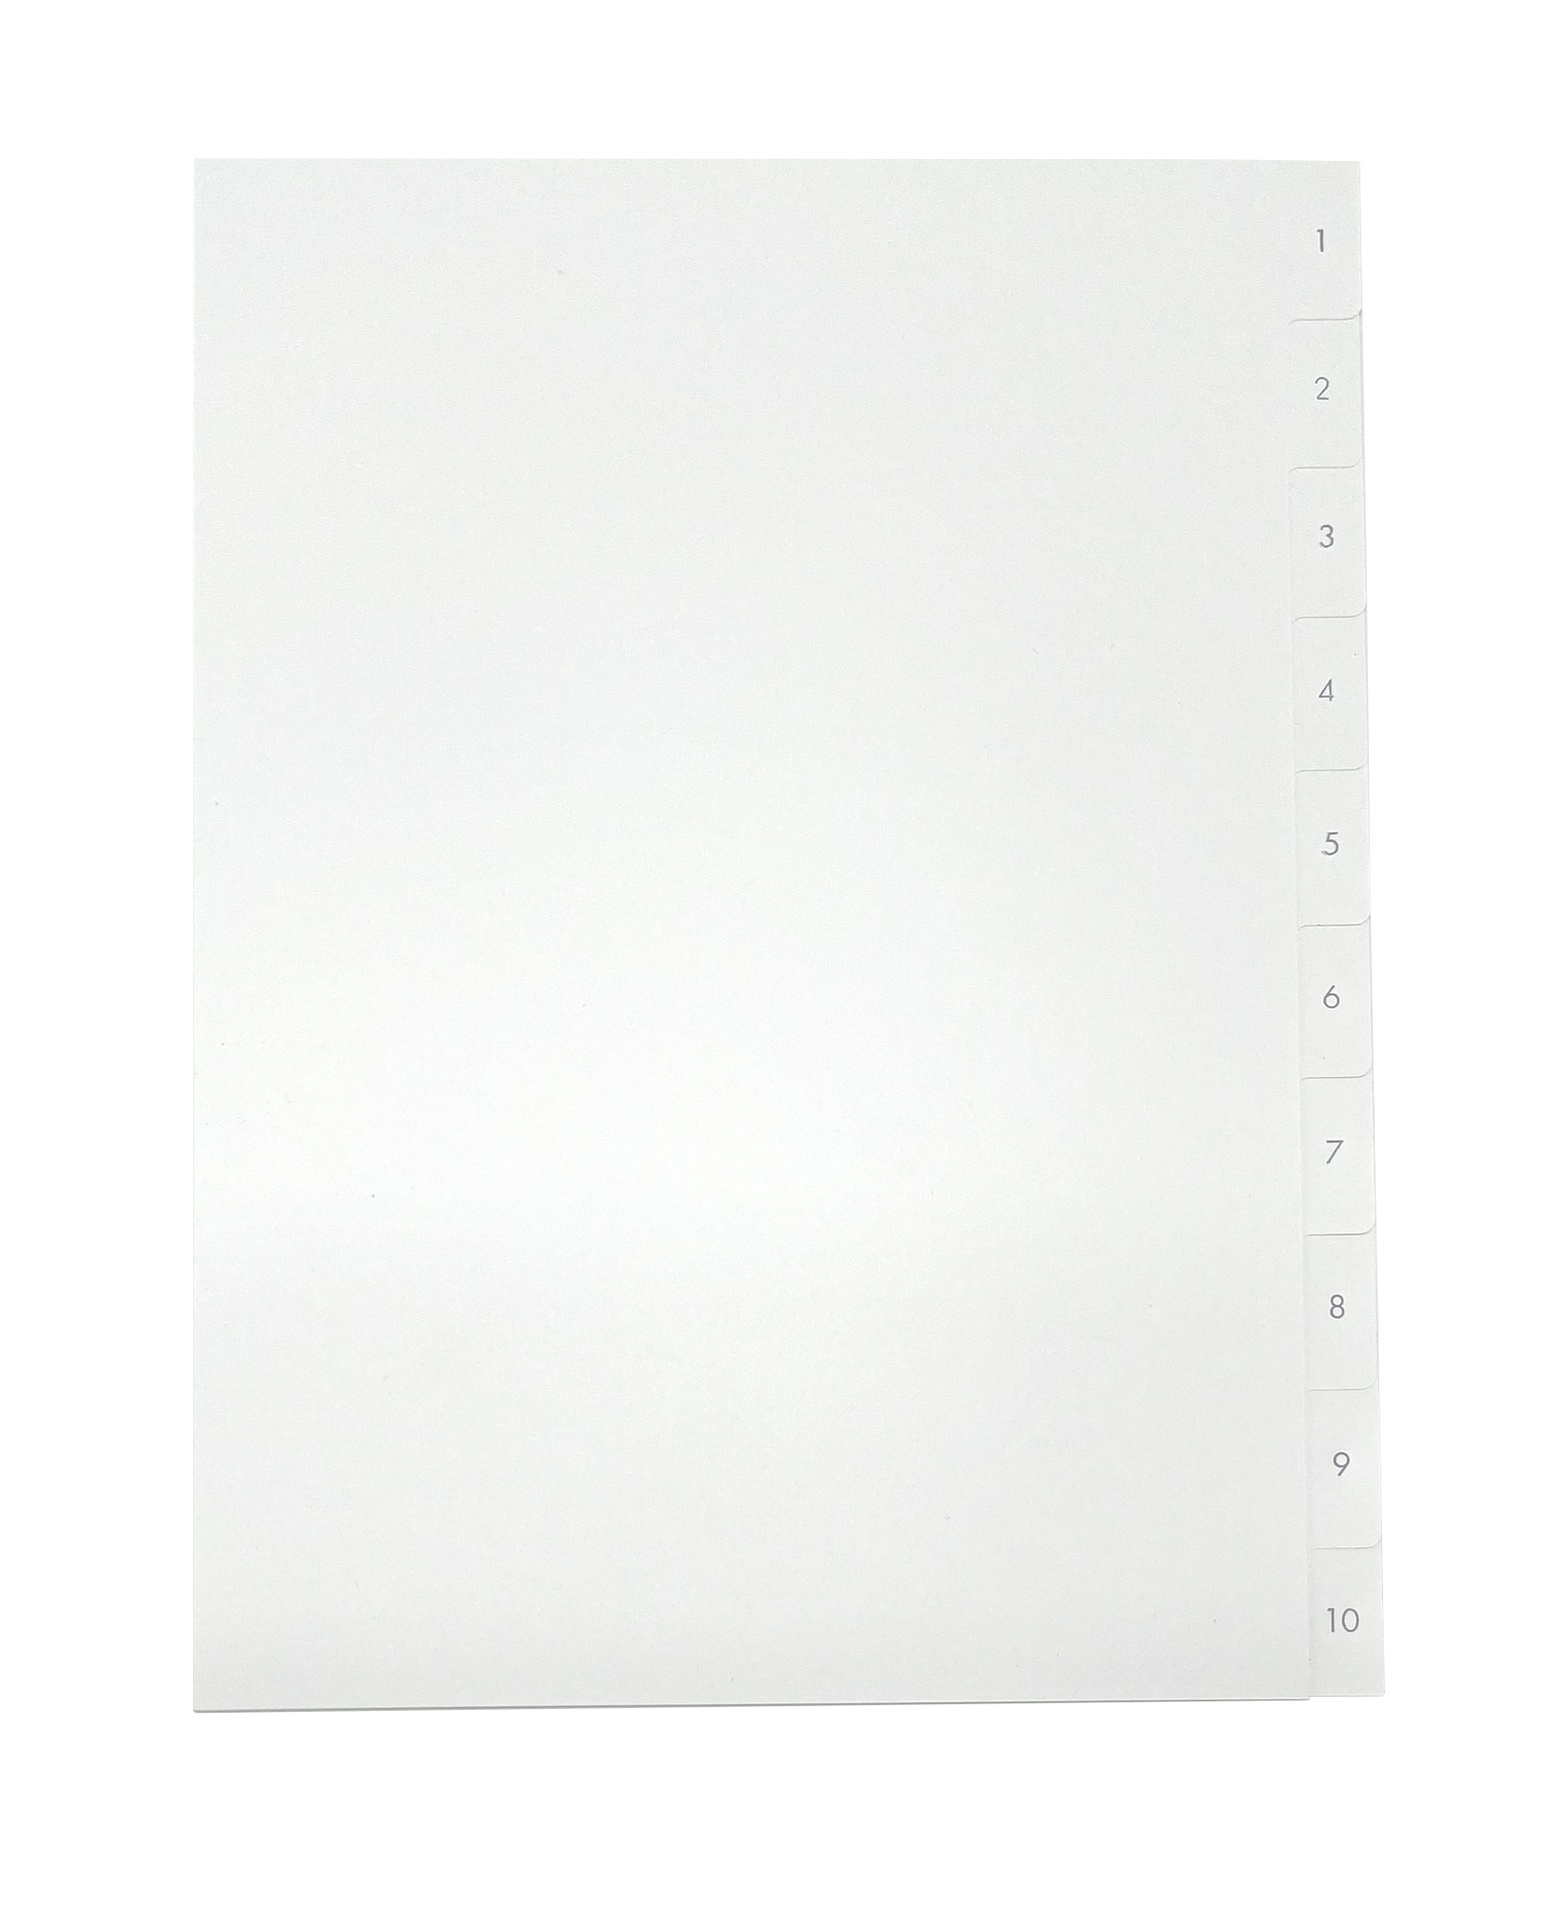 [EEHANNE017] Pärmregister A4 1-10 vita med grått tryck 25st/fp